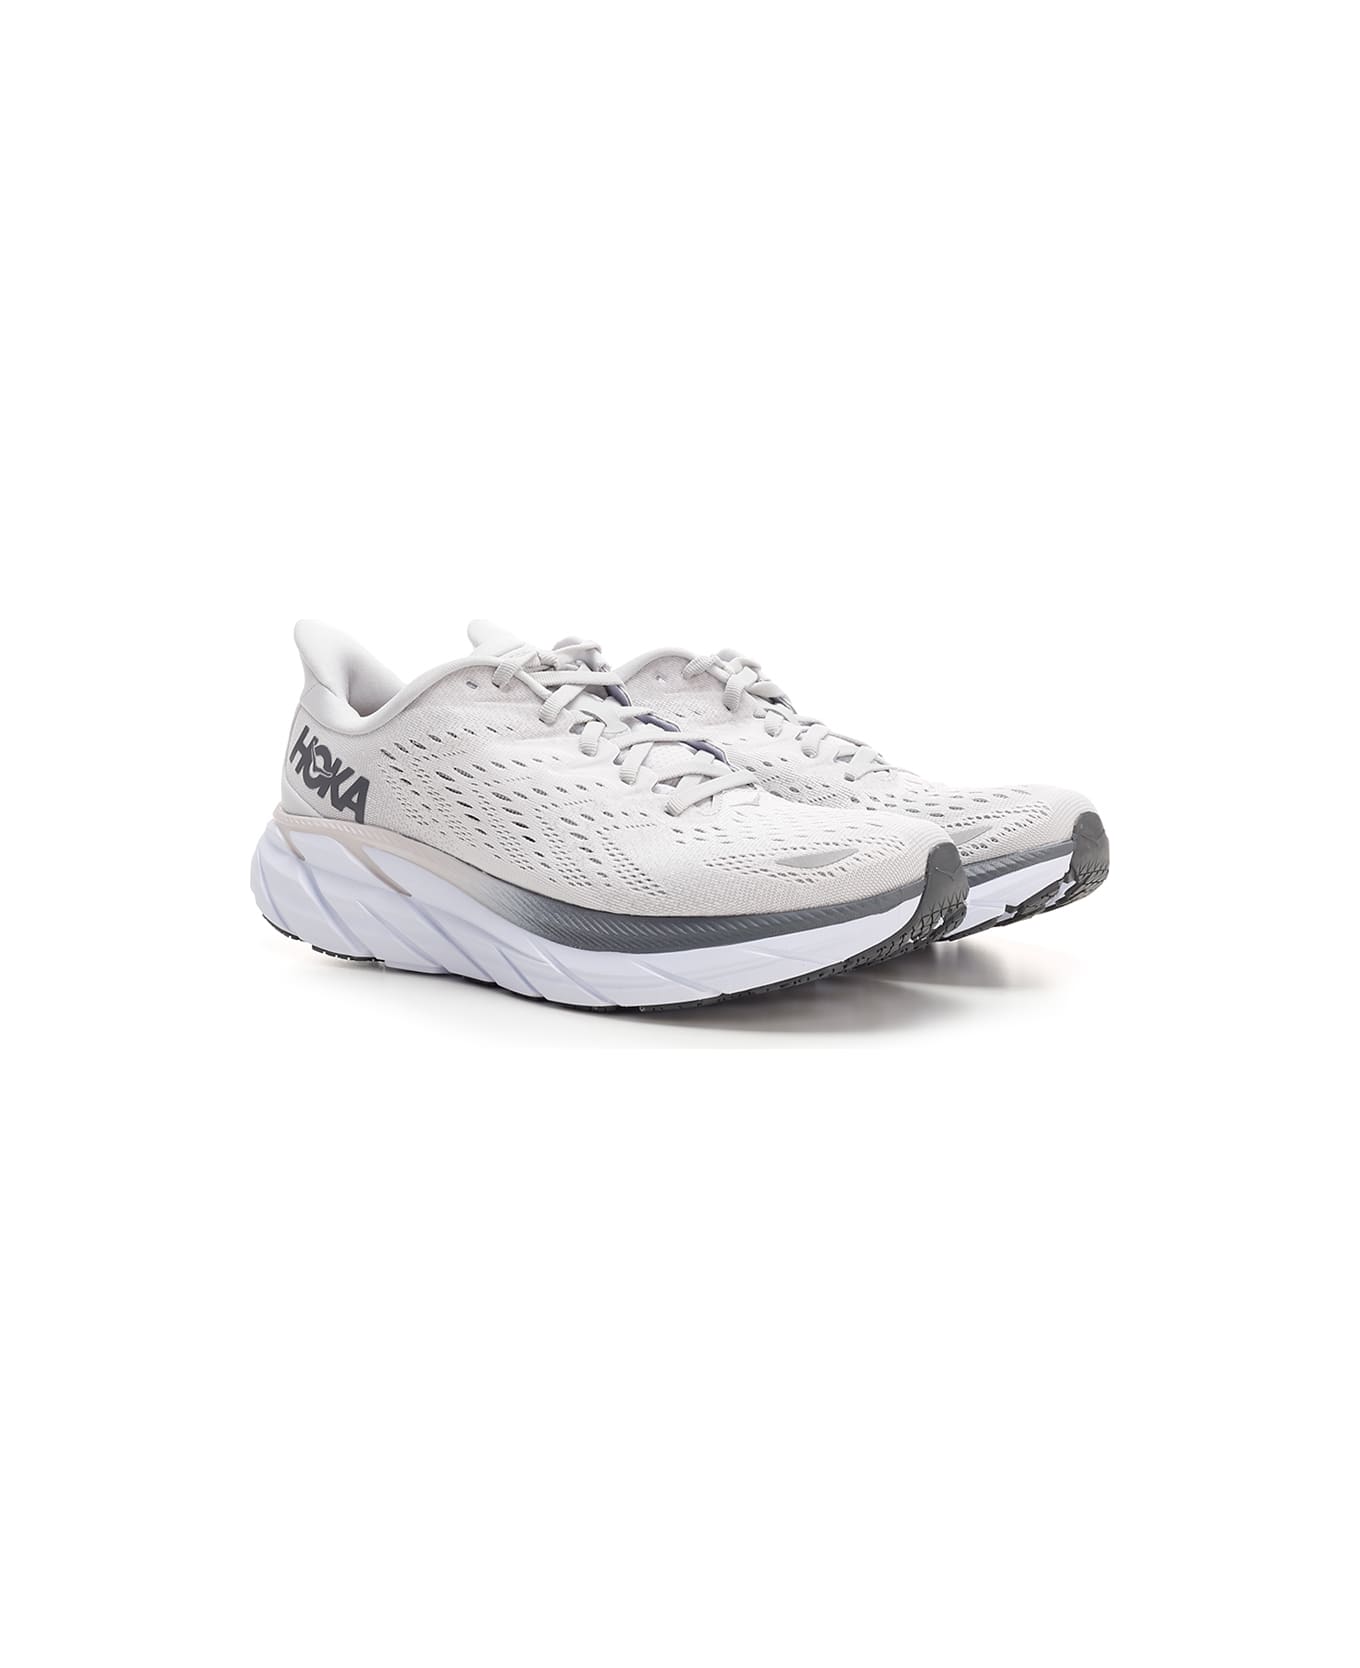 Hoka Ivory And Gray "clifton 8" Sneakers - Grey